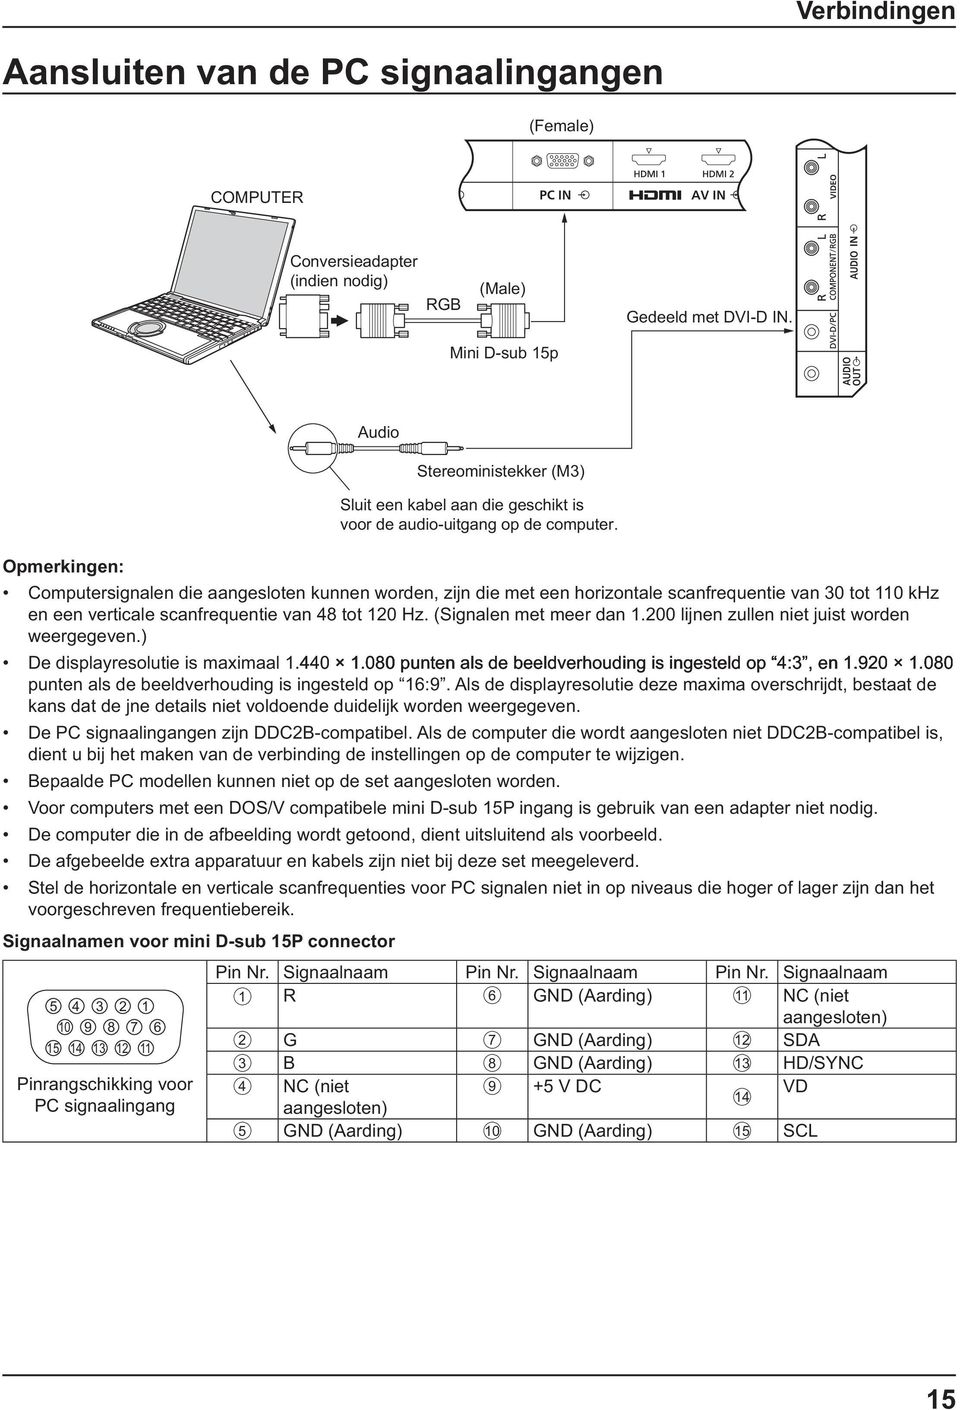 Opmerkingen: Computersignalen die aangesloten kunnen worden, zijn die met een horizontale scanfrequentie van 30 tot 110 khz en een verticale scanfrequentie van 48 tot 120 Hz. (Signalen met meer dan 1.